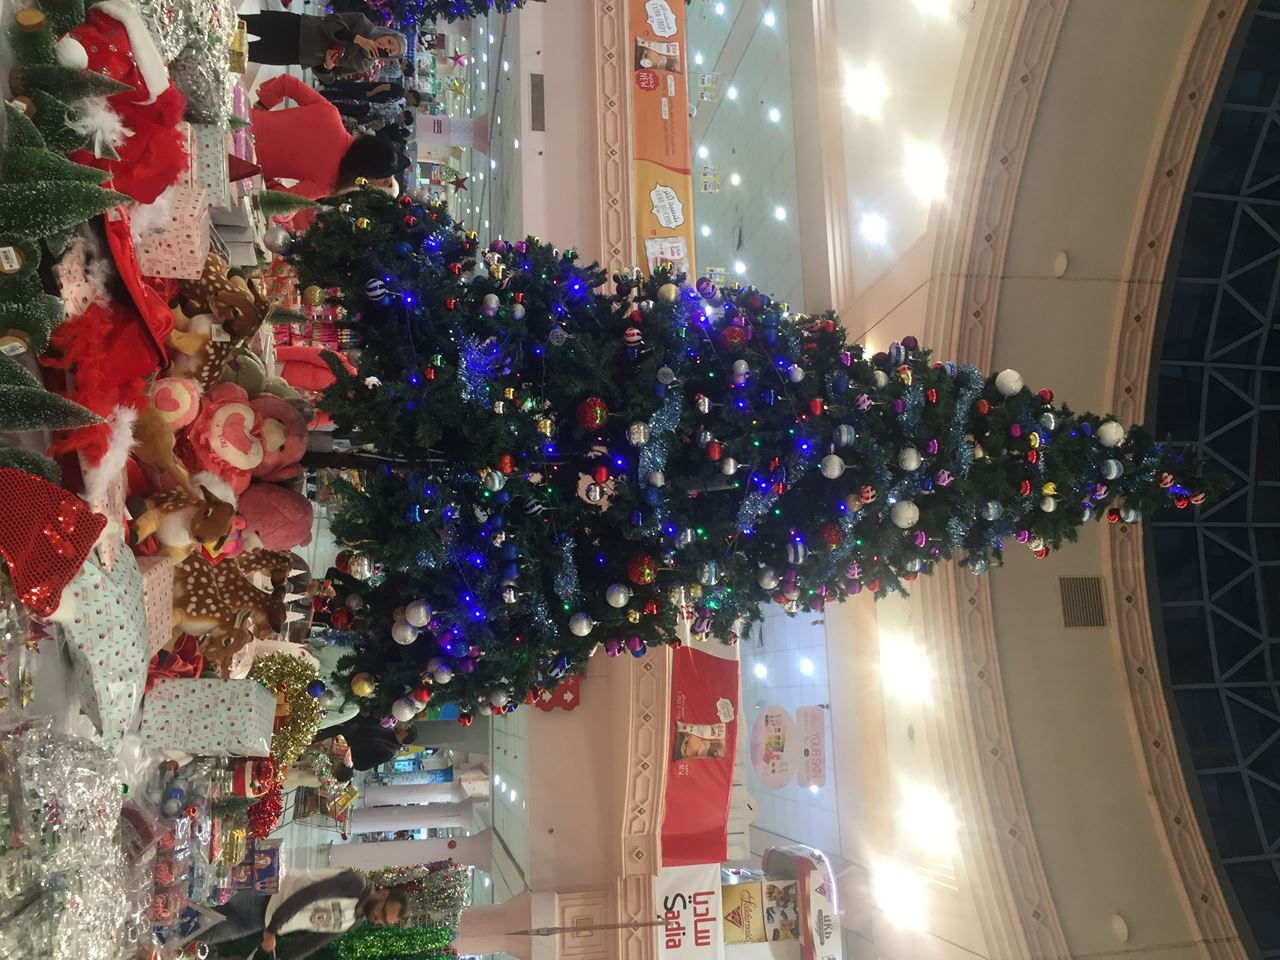 شجرة الميلاد الكبيرة في سيتي سنتر السالمية